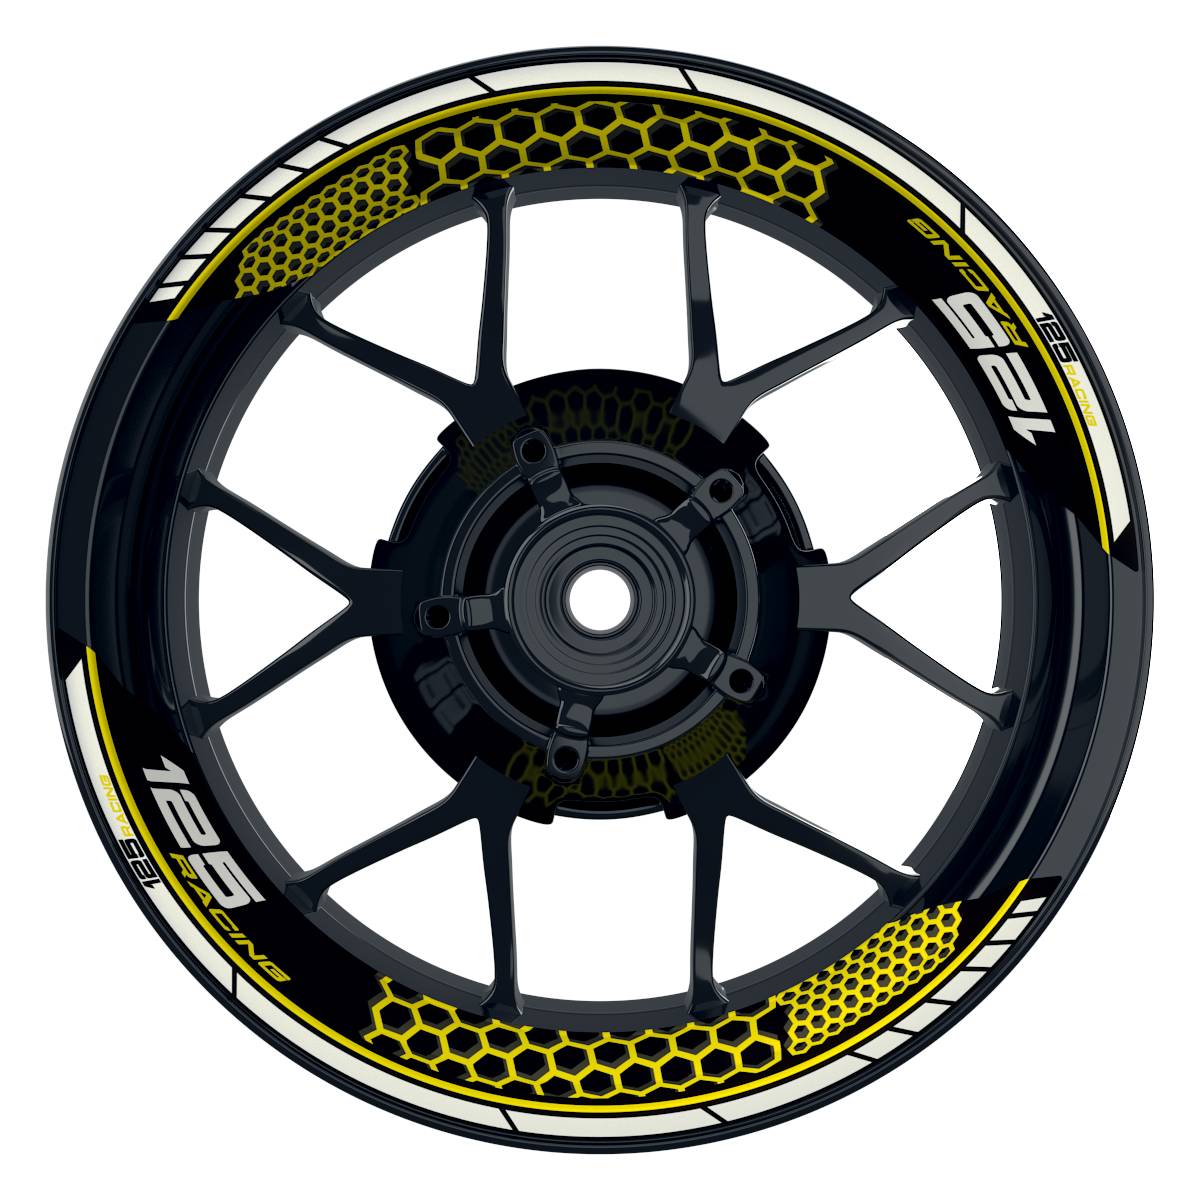 KTM Racing 125 Hexagon schwarz gelb Frontansicht